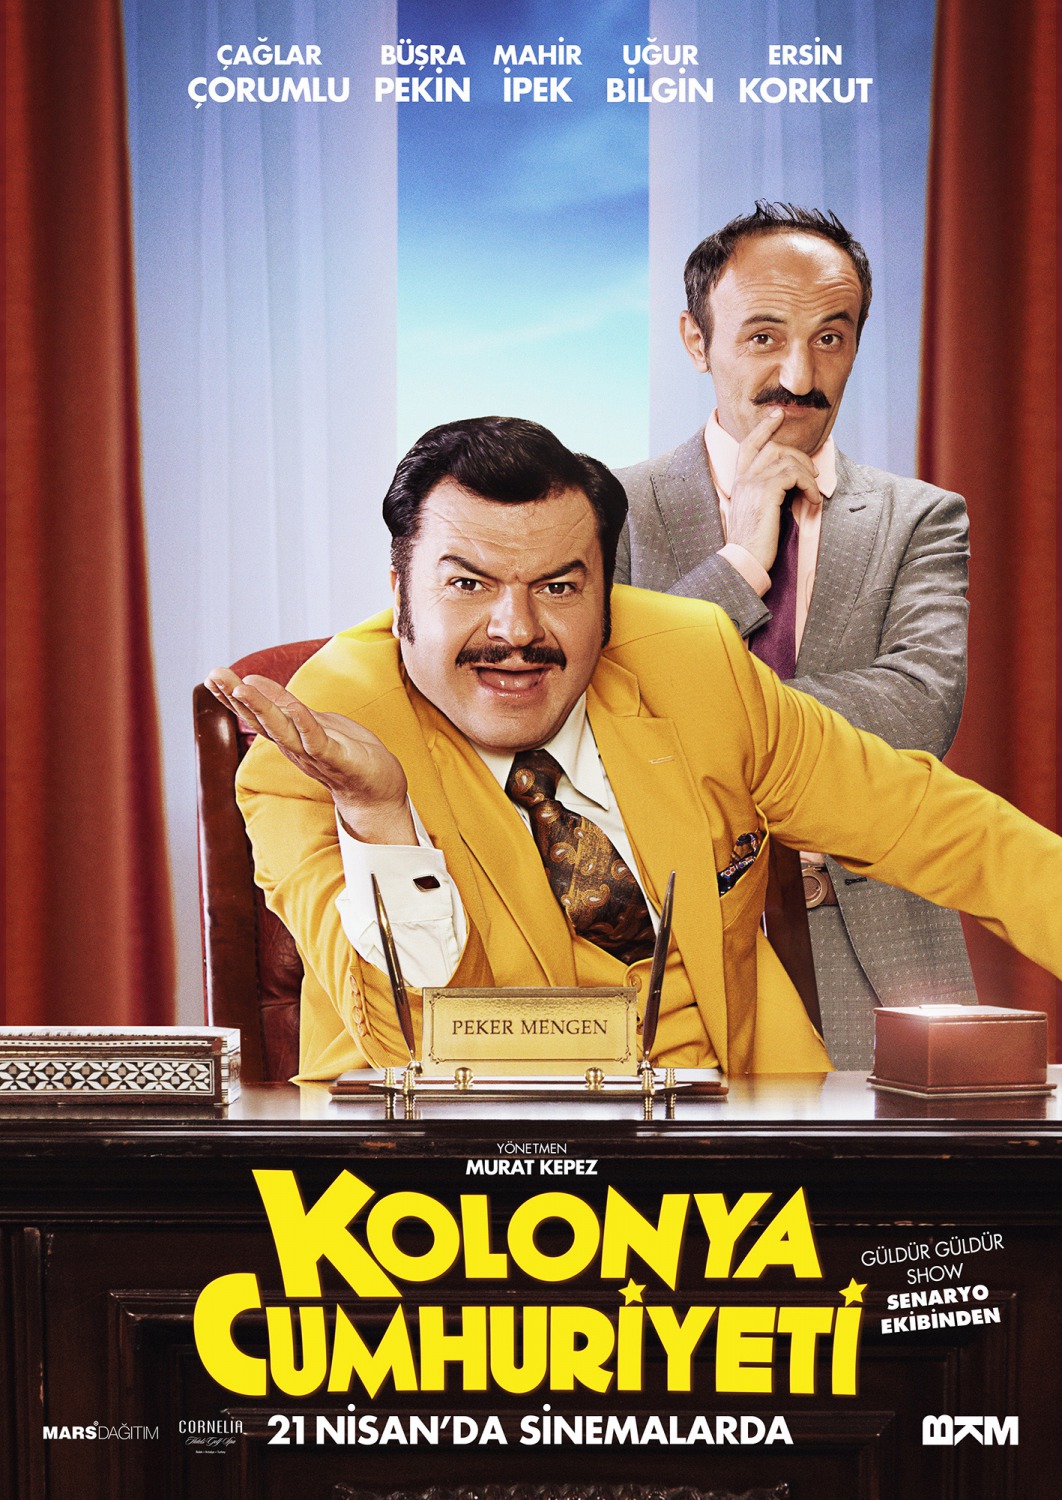 Extra Large Movie Poster Image for Kolonya Cumhuriyeti (#6 of 7)